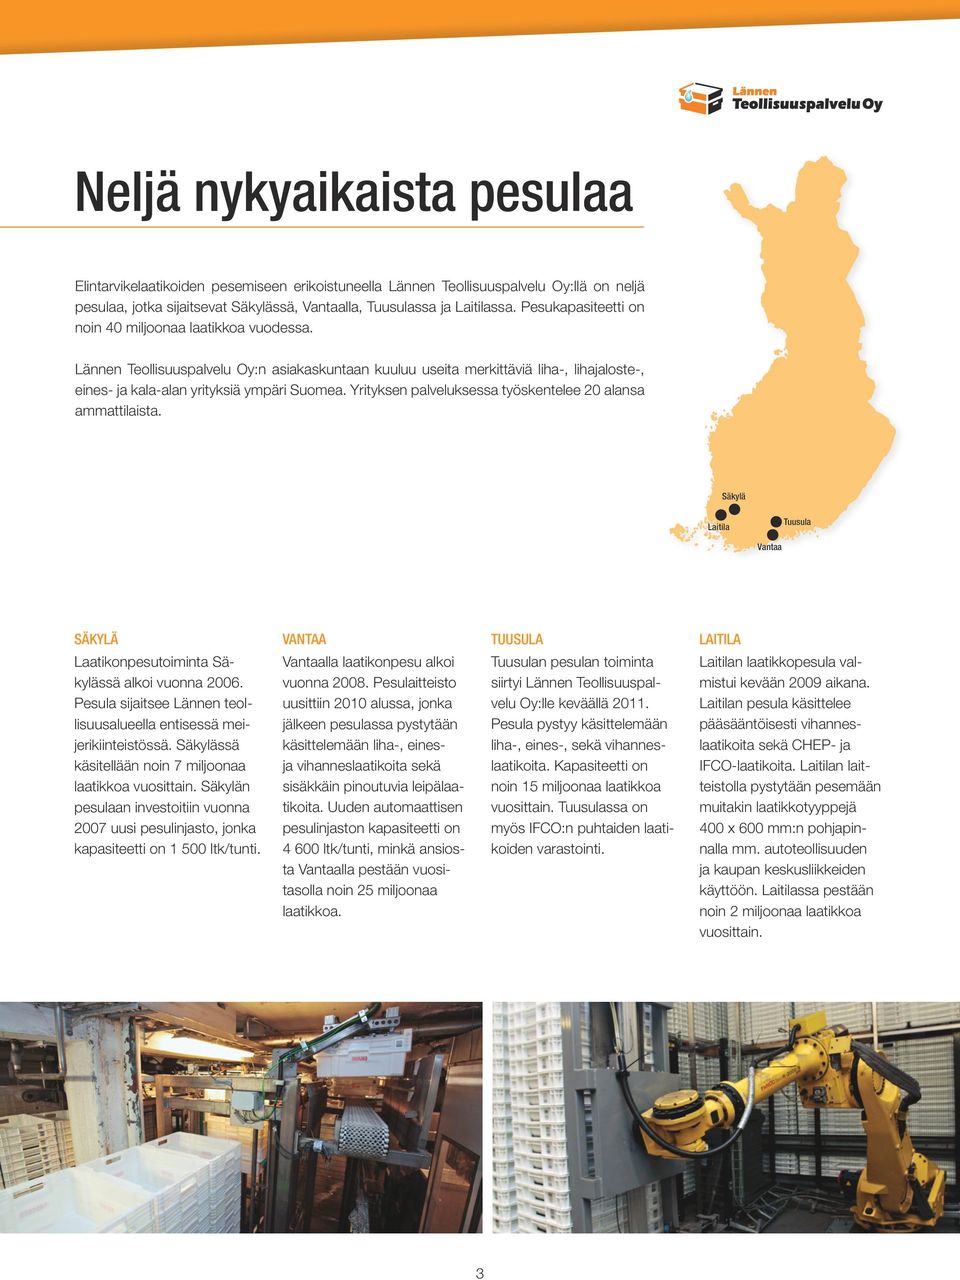 Yrityksen palveluksessa työskentelee 20 alansa ammattilaista. Säkylä Laitila Tuusula Vantaa Säkylä Laatikonpesutoiminta Säkylässä alkoi vuonna 2006.